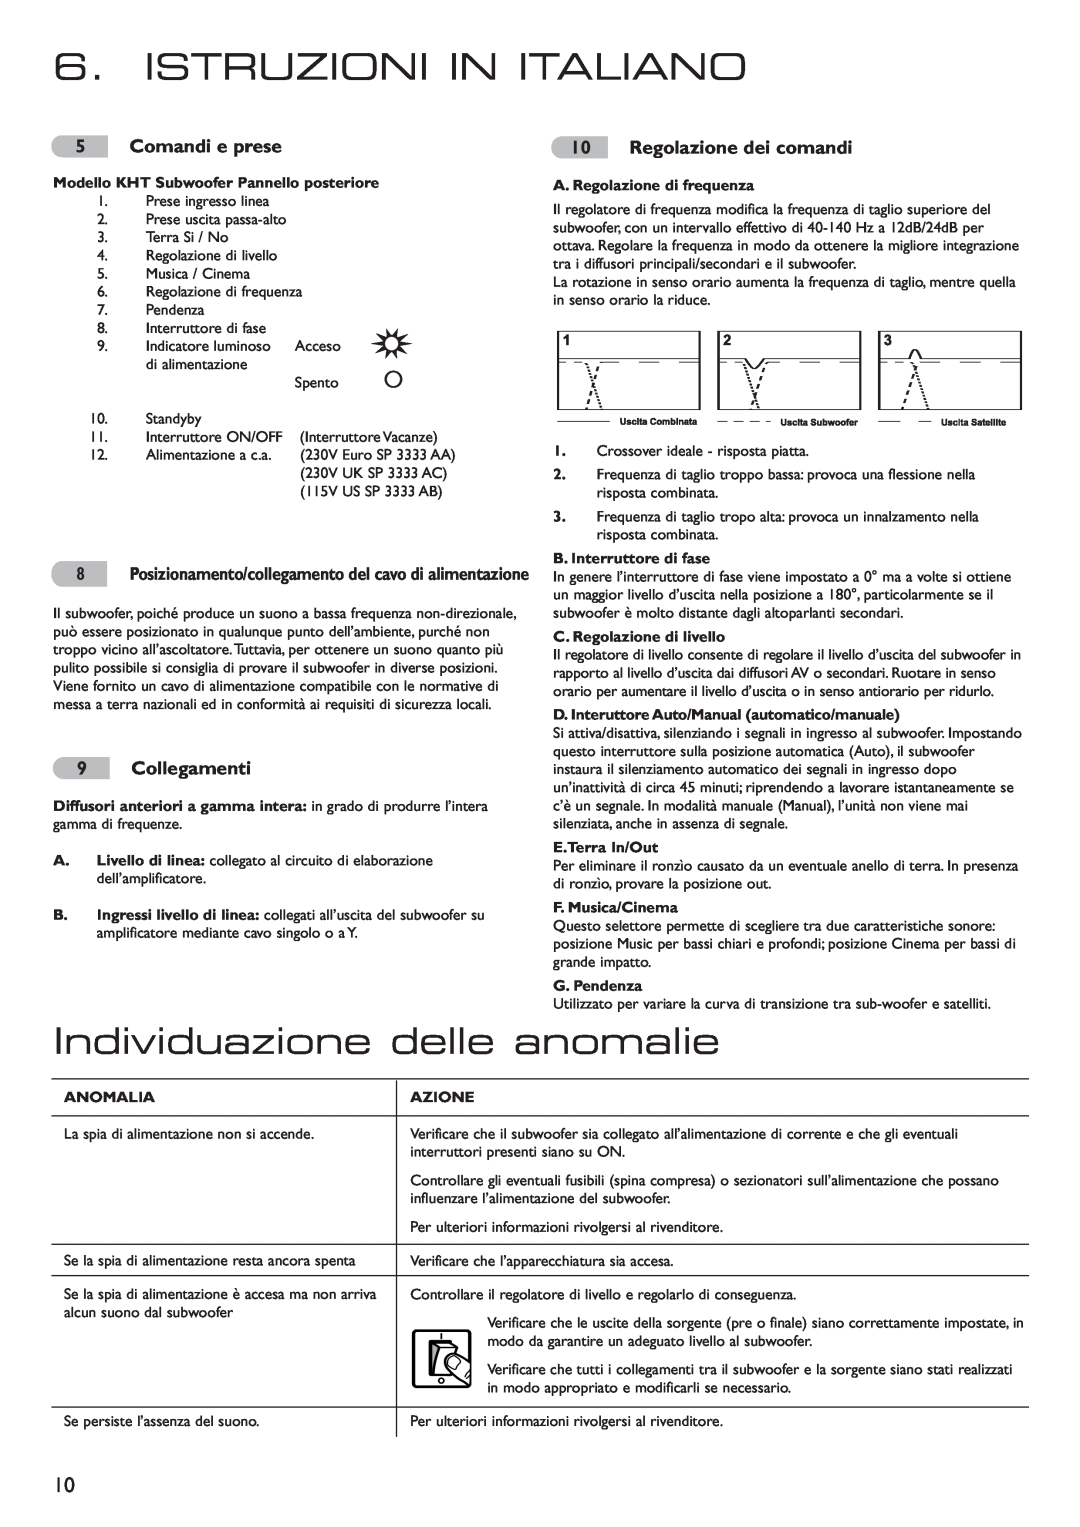 KEF Audio 290149ML installation manual Istruzioni In Italiano, Individuazione delle anomalie, Comandi e prese, Collegamenti 